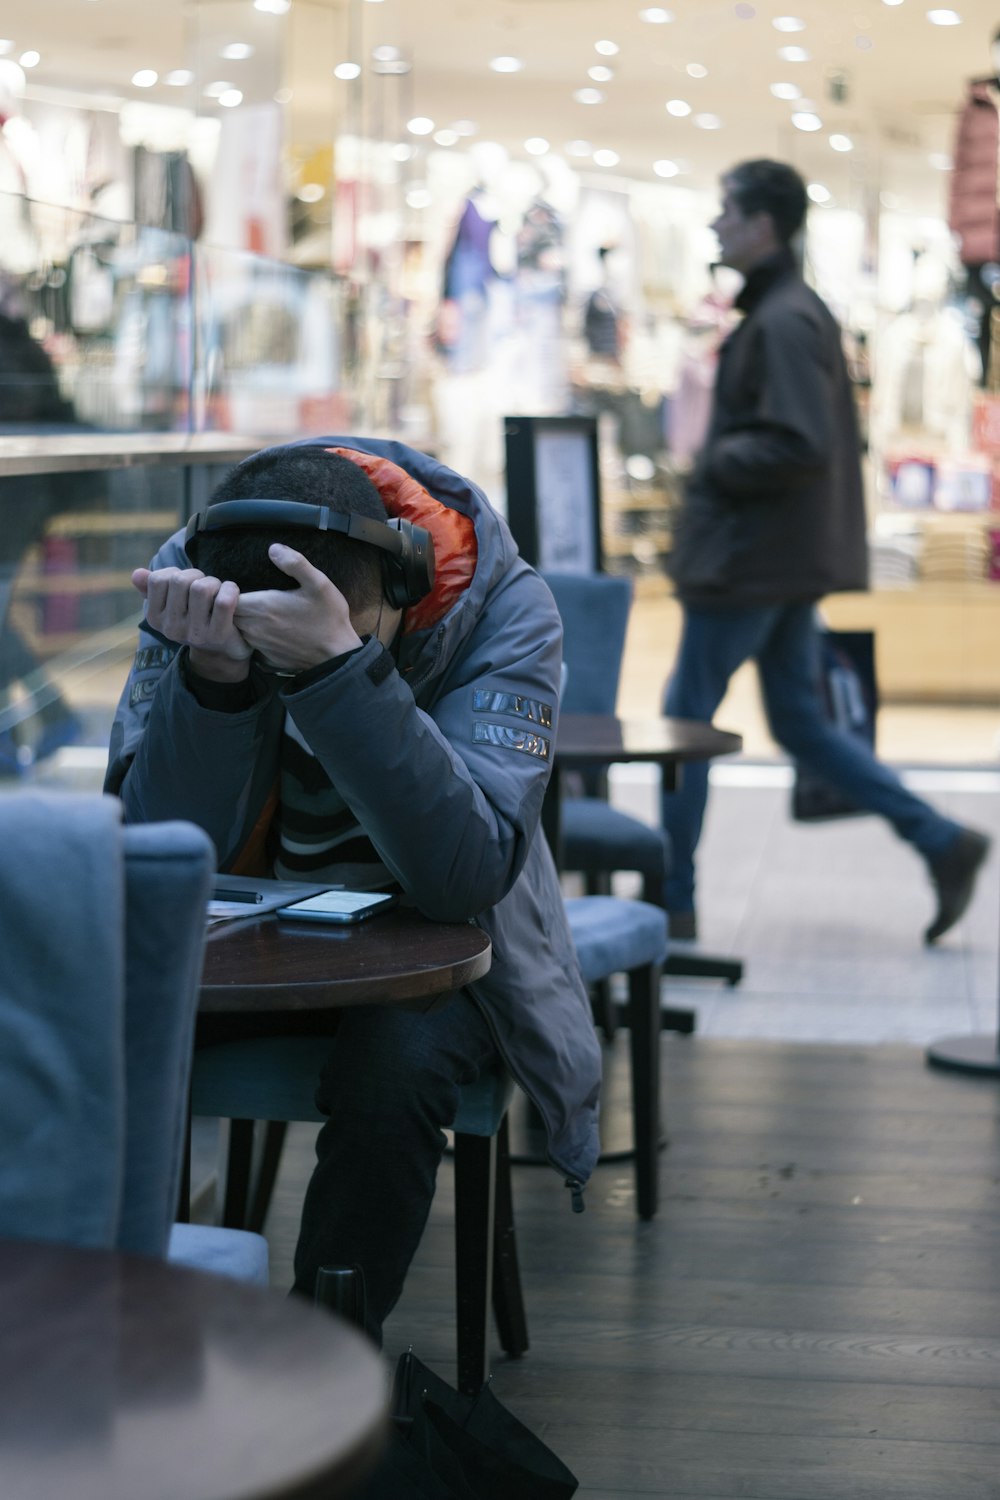 Mann sitzt neben Tisch mit eingeschaltetem Smartphone